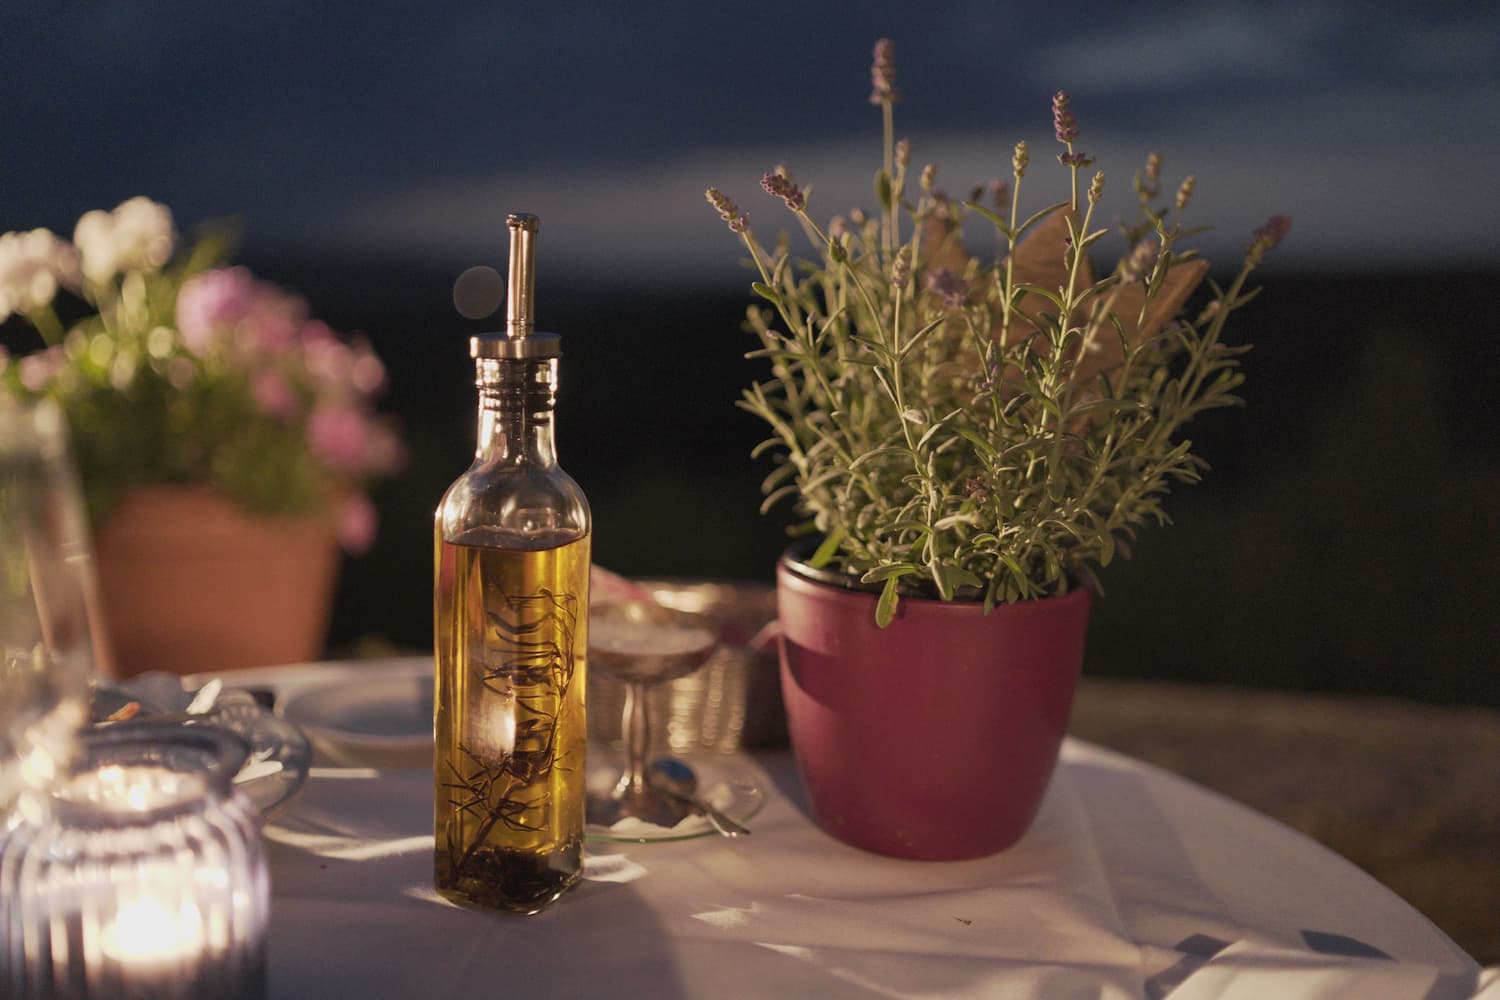 Azeite de oliva é uma fonte rica de ômega 3.